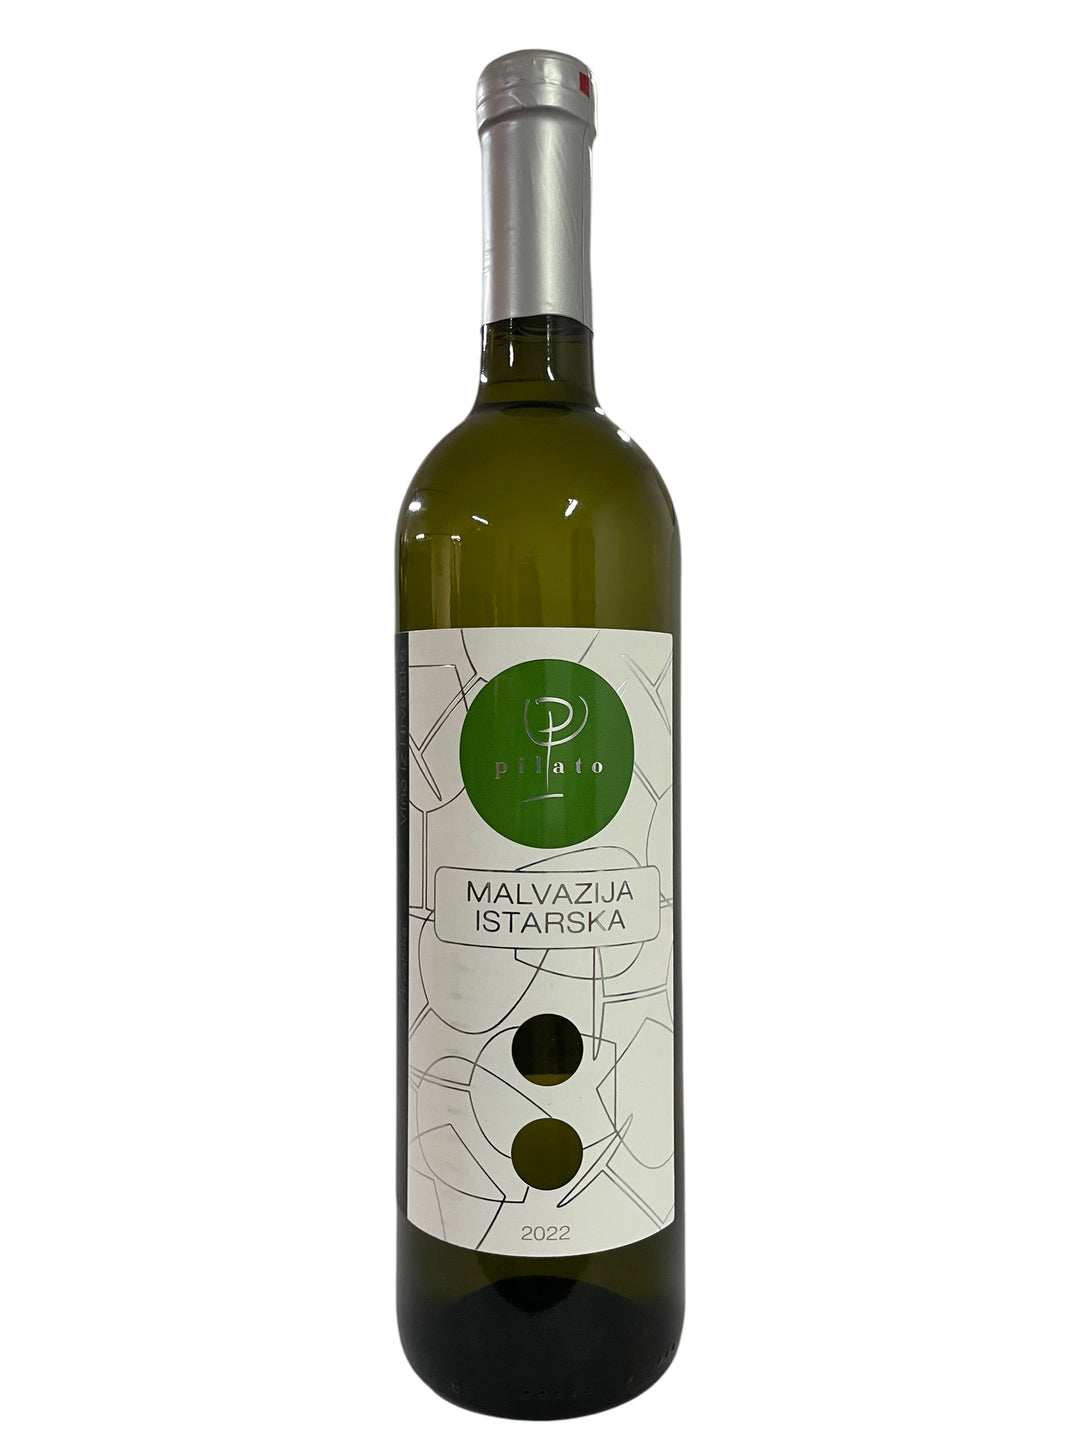 Belo vino Malvazija istarska Pilato 0,75l